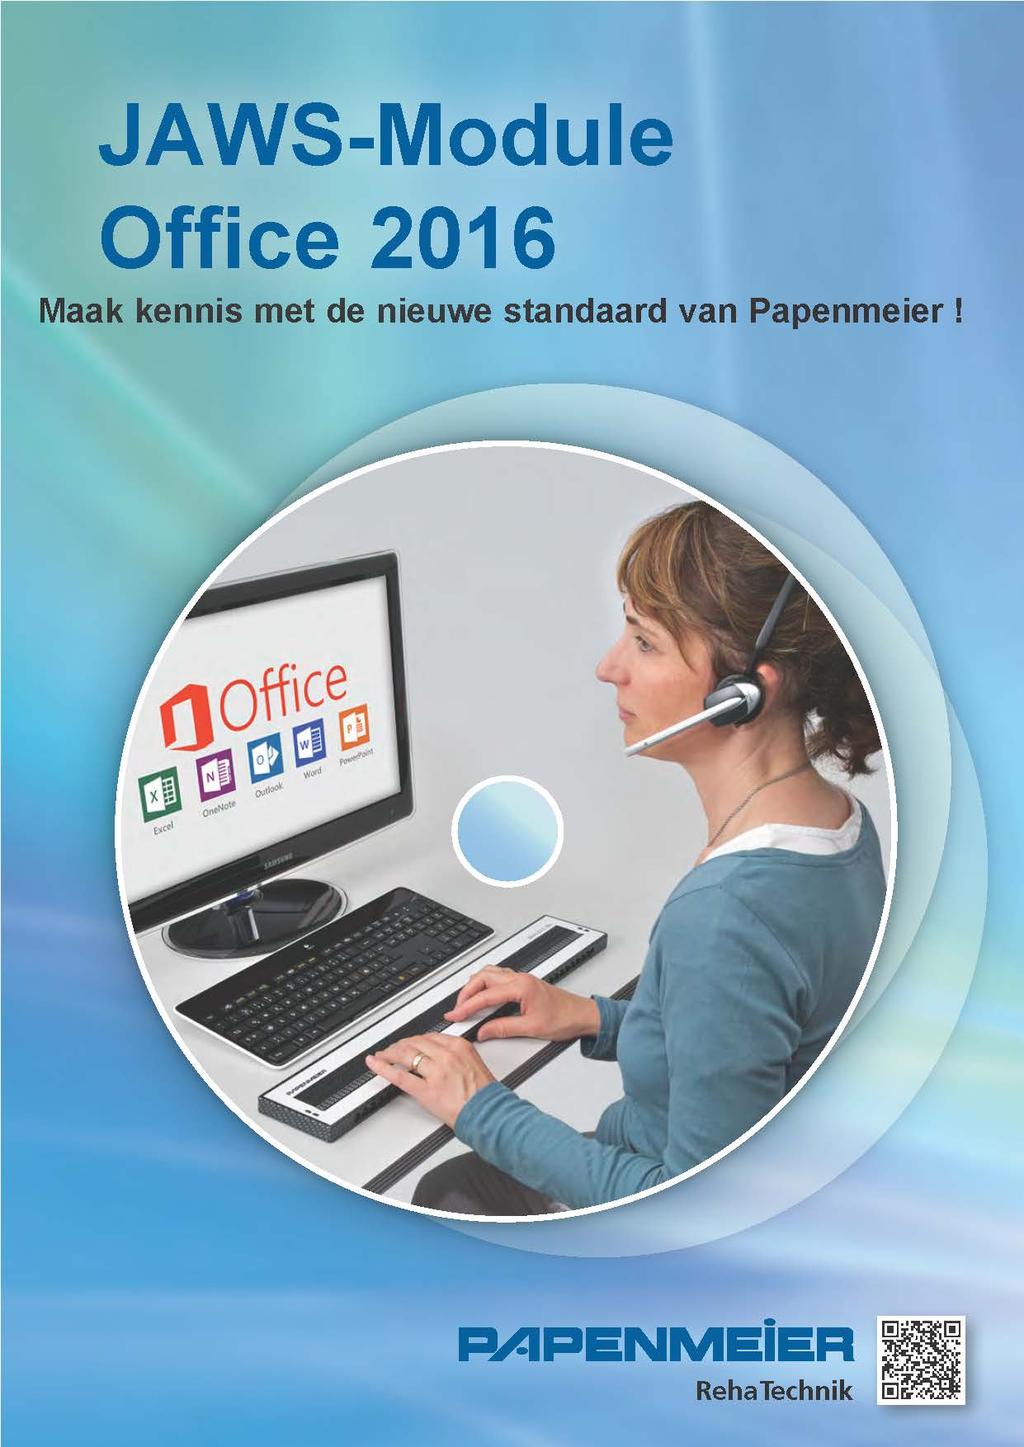 JAWS Module Office 2016 JAWS Module Office 2016: Profiteer van de nieuwe standaard van Papenmeier.